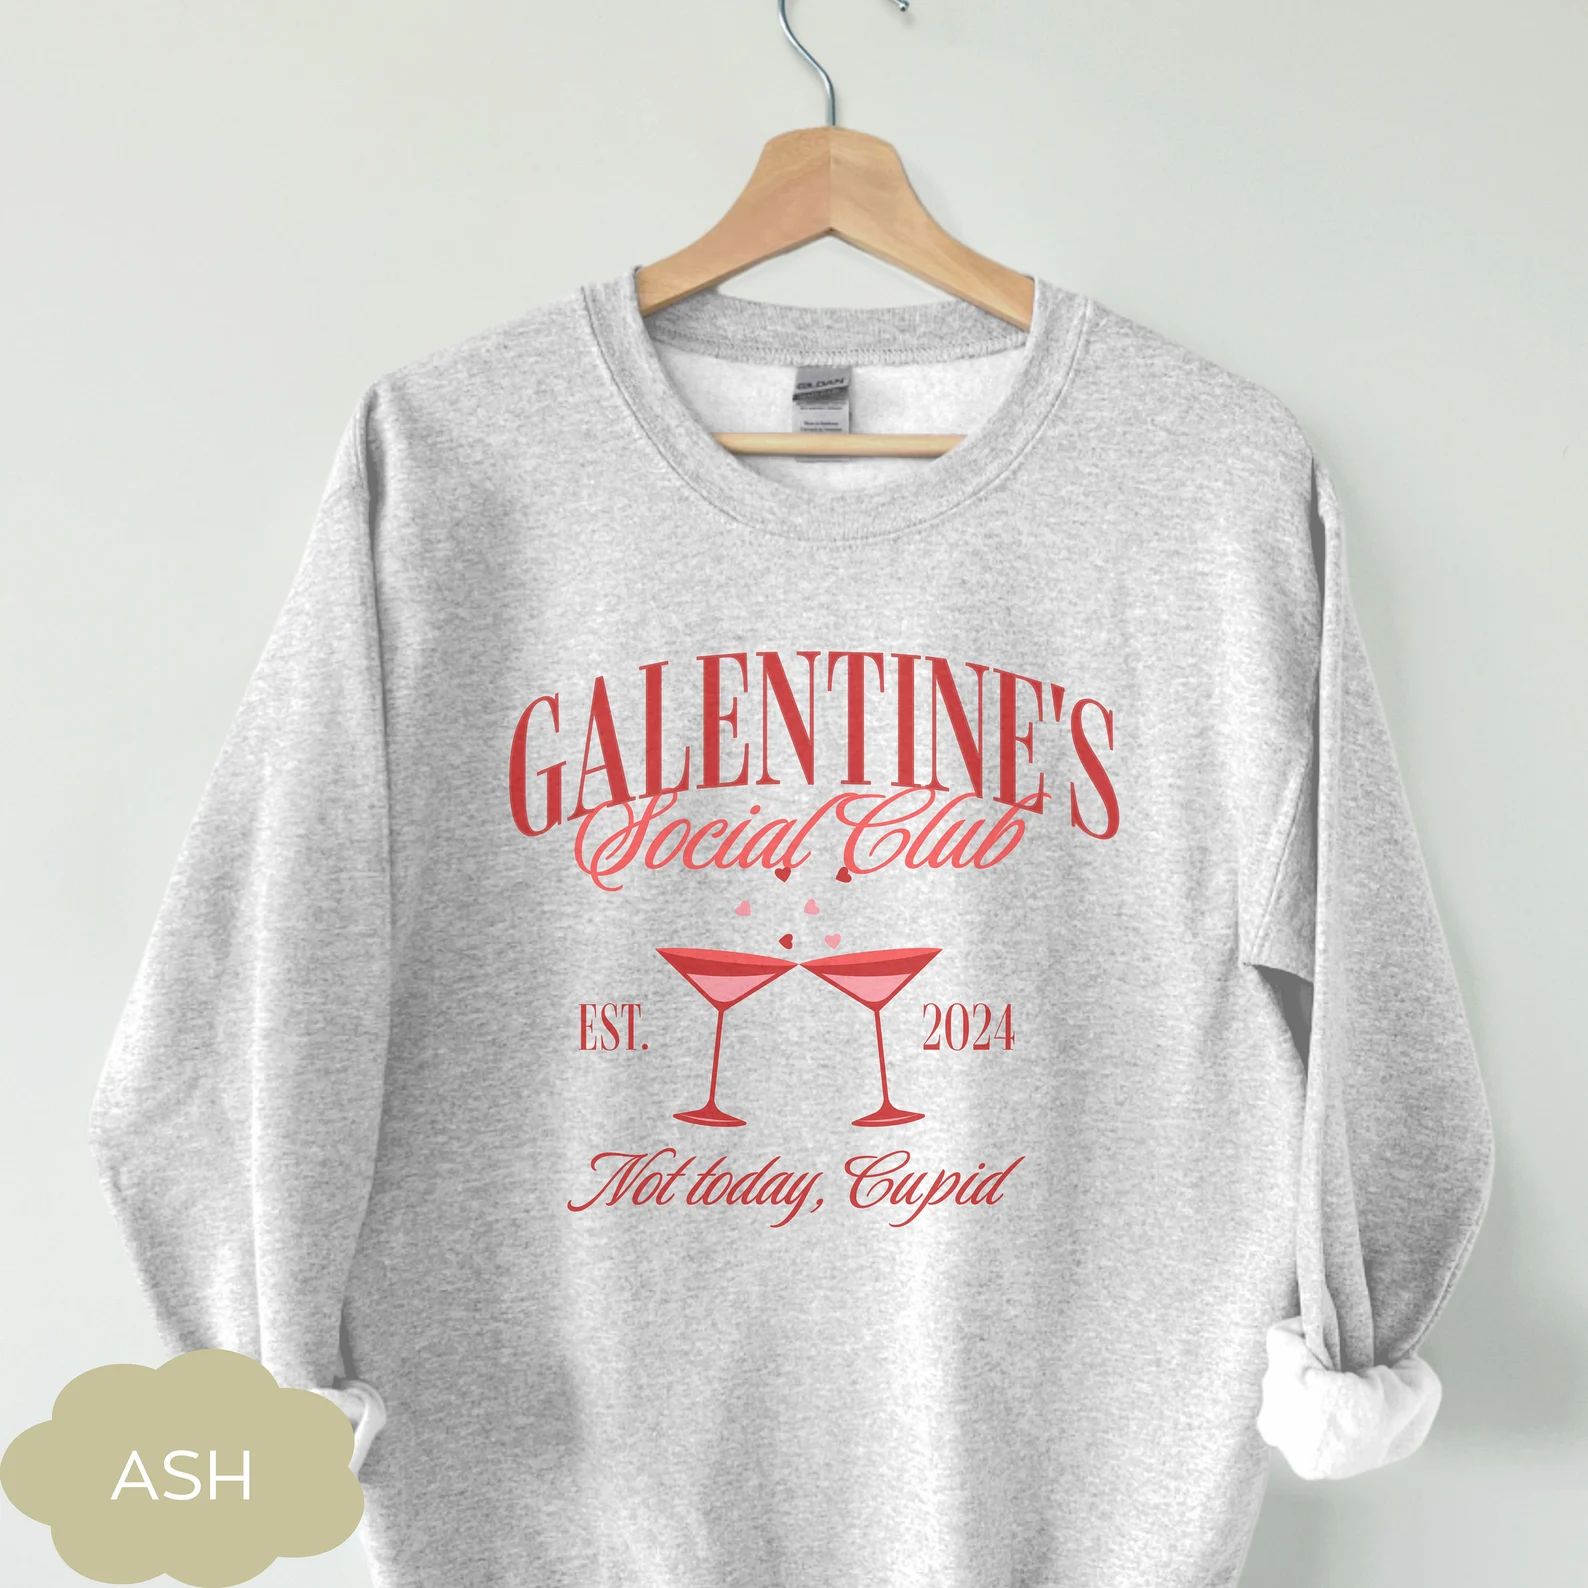 Galentines Sweatshirt, XOXO Galentine, Friends Gift, Galentine Party Wear, Heart Print, Galentine... | Etsy (US)